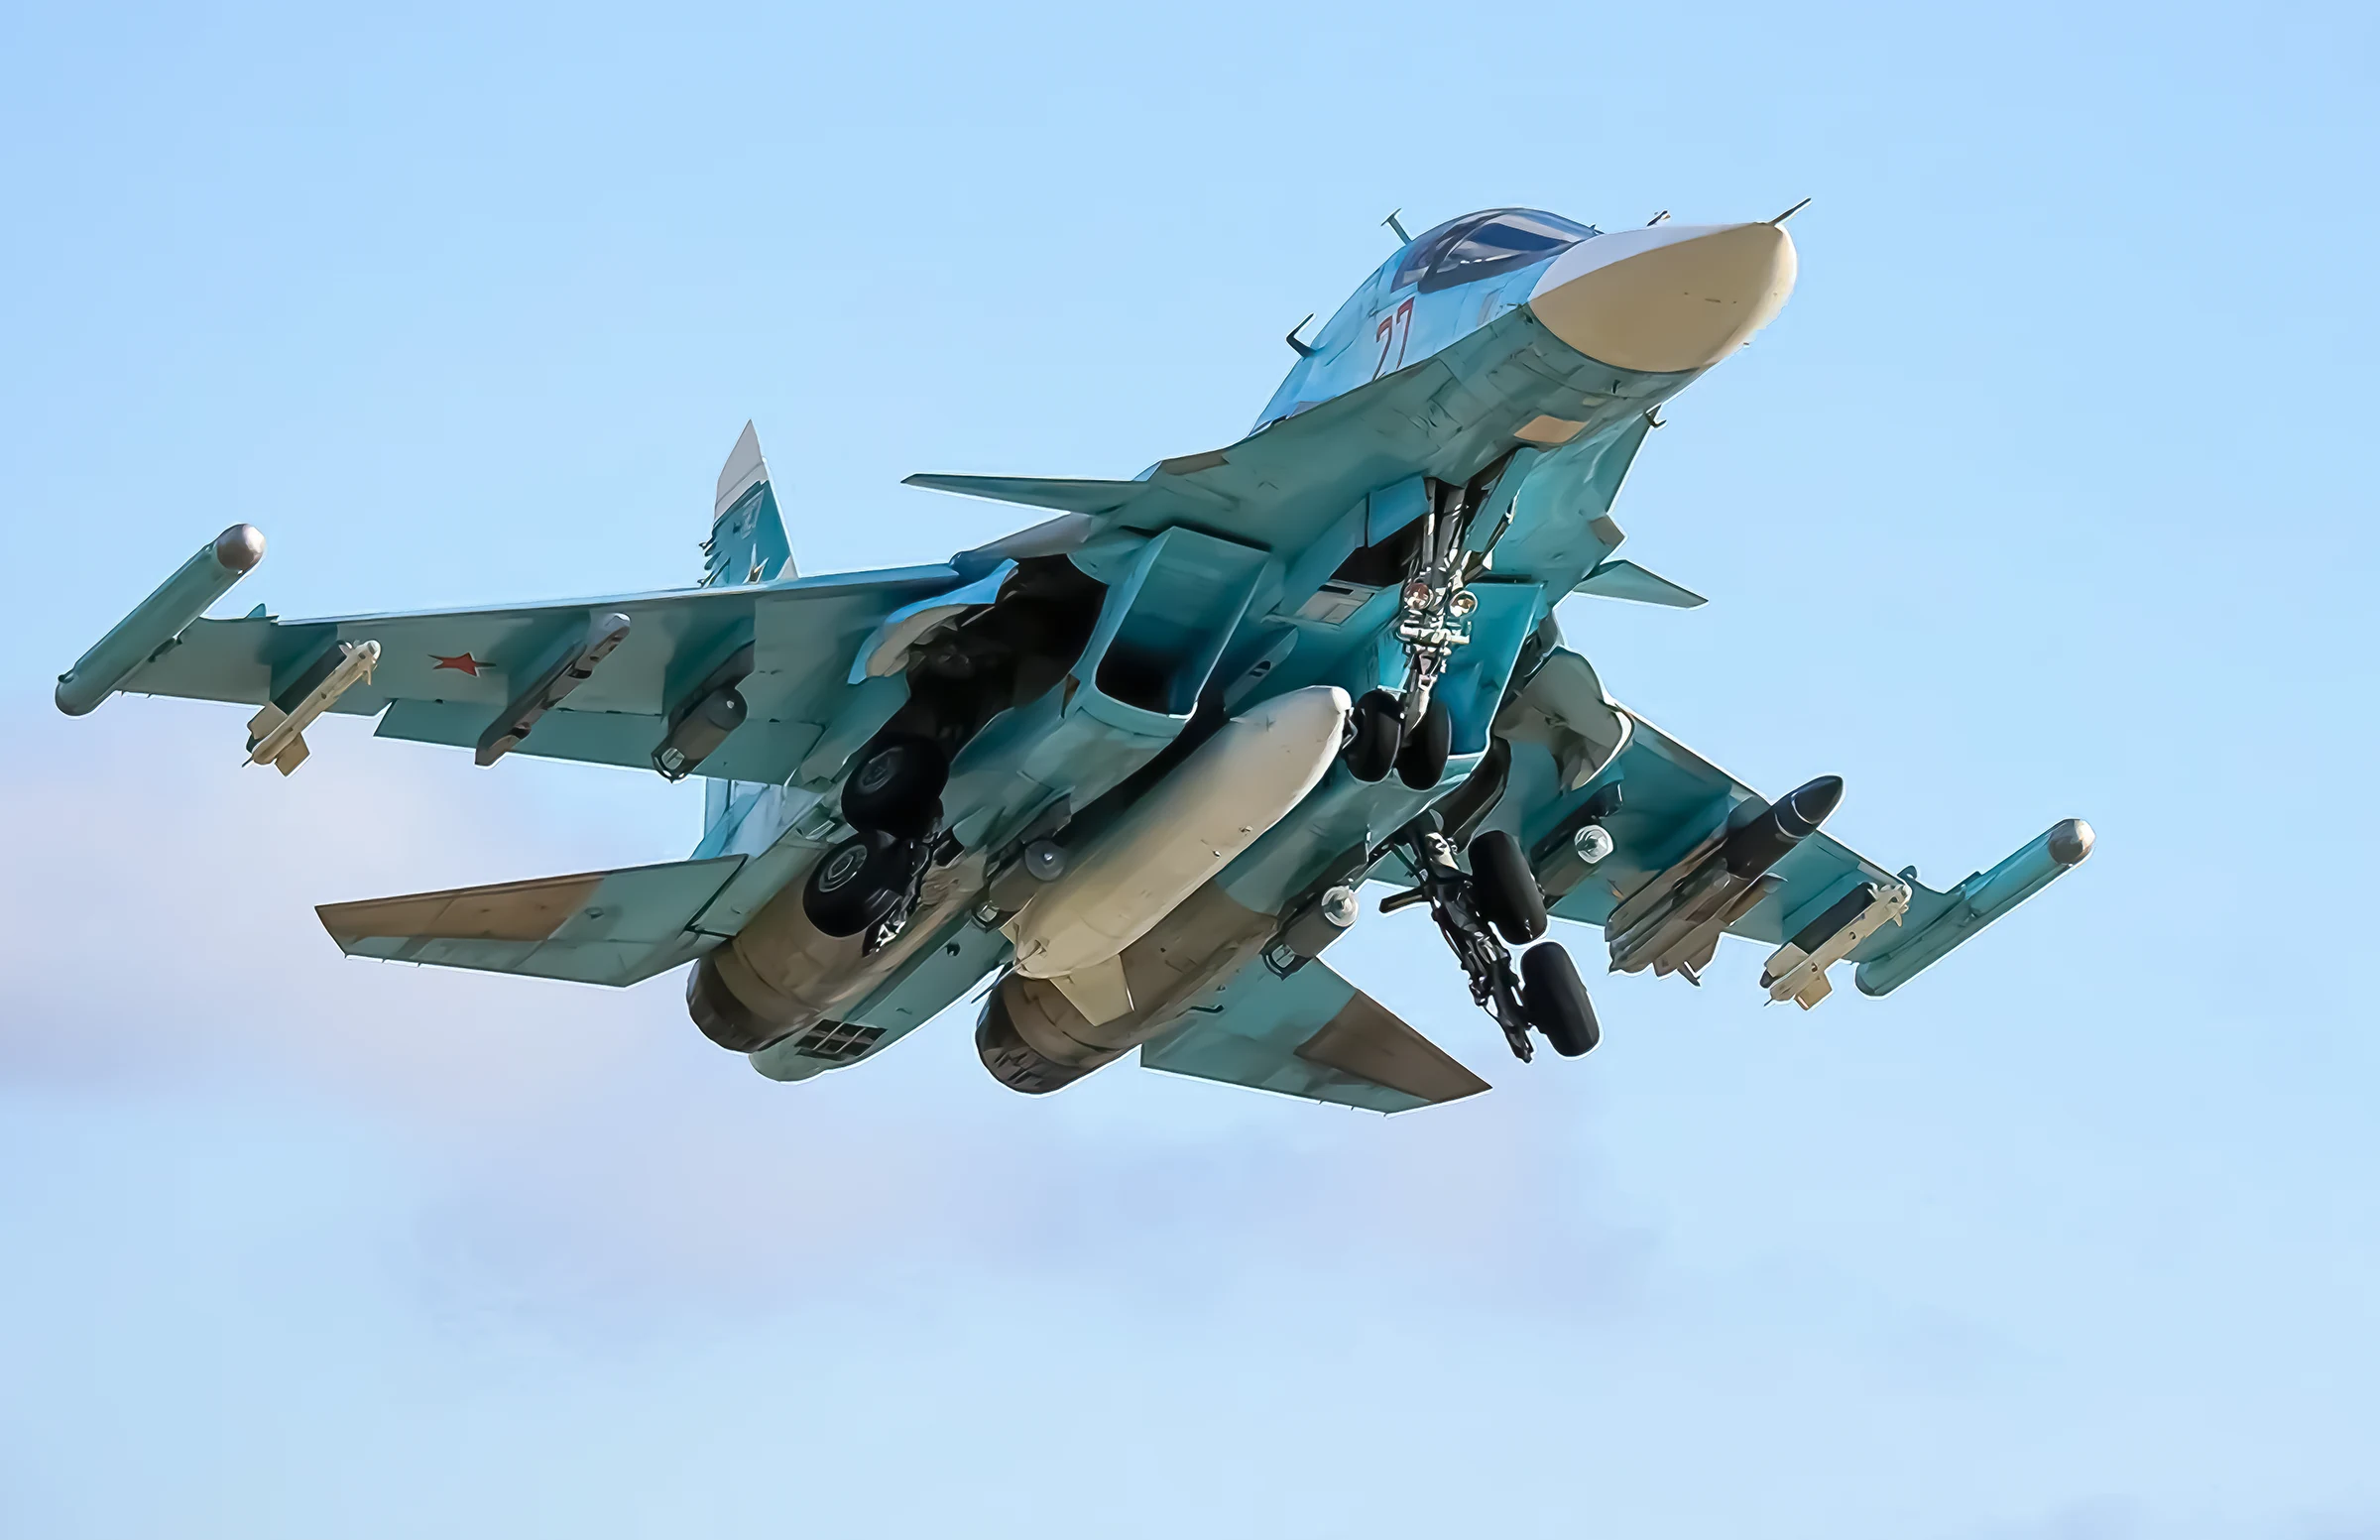 El Su-34 ruso despliega misil Kinzhal en Ucrania